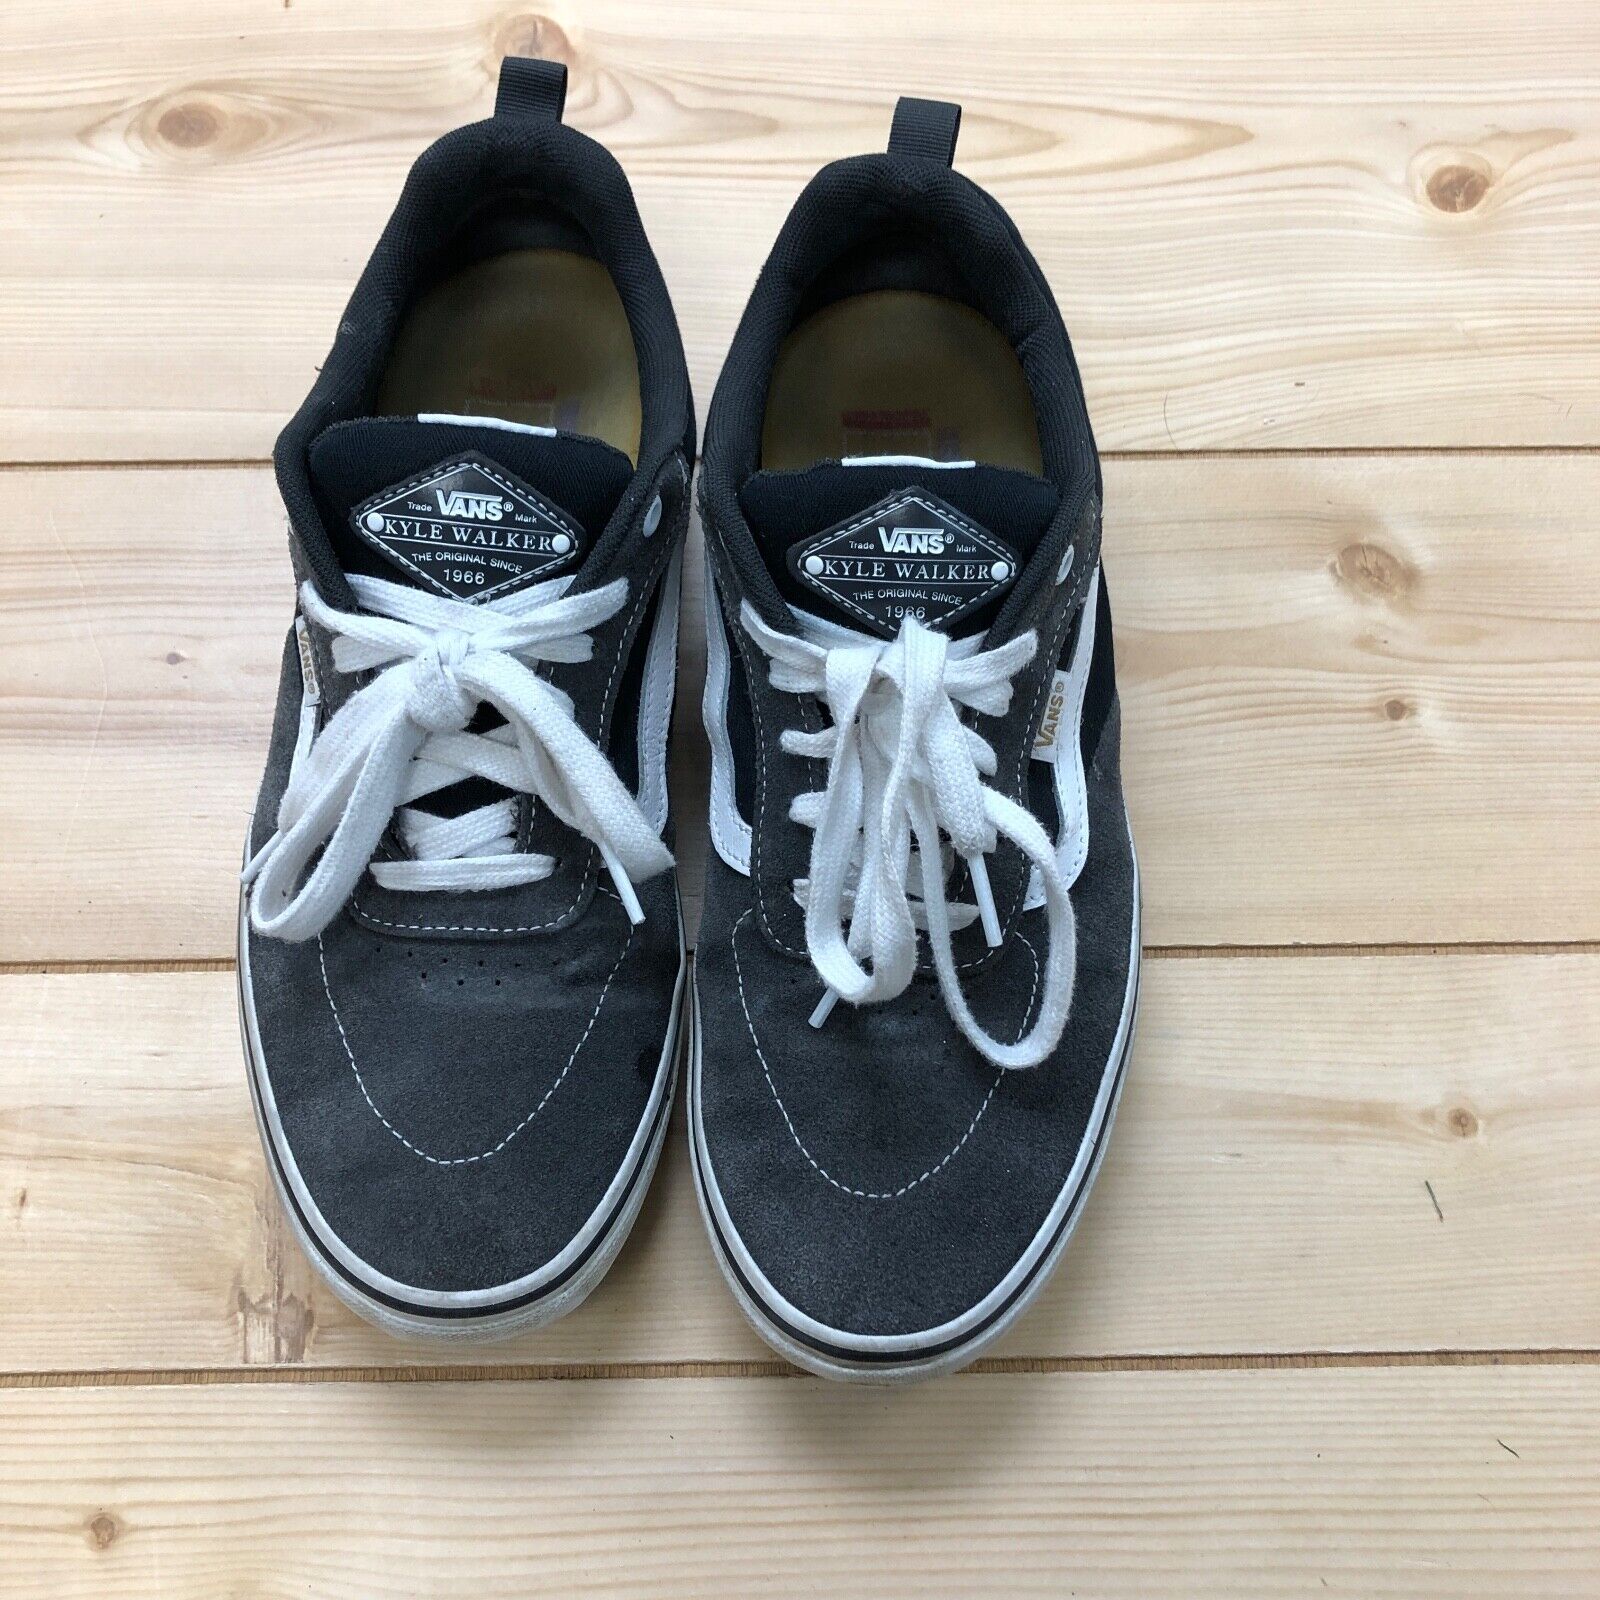 Vans Black Gray Suede Kyle Walker Pop Cush Lace Up Skate Shoes Men's Size 11